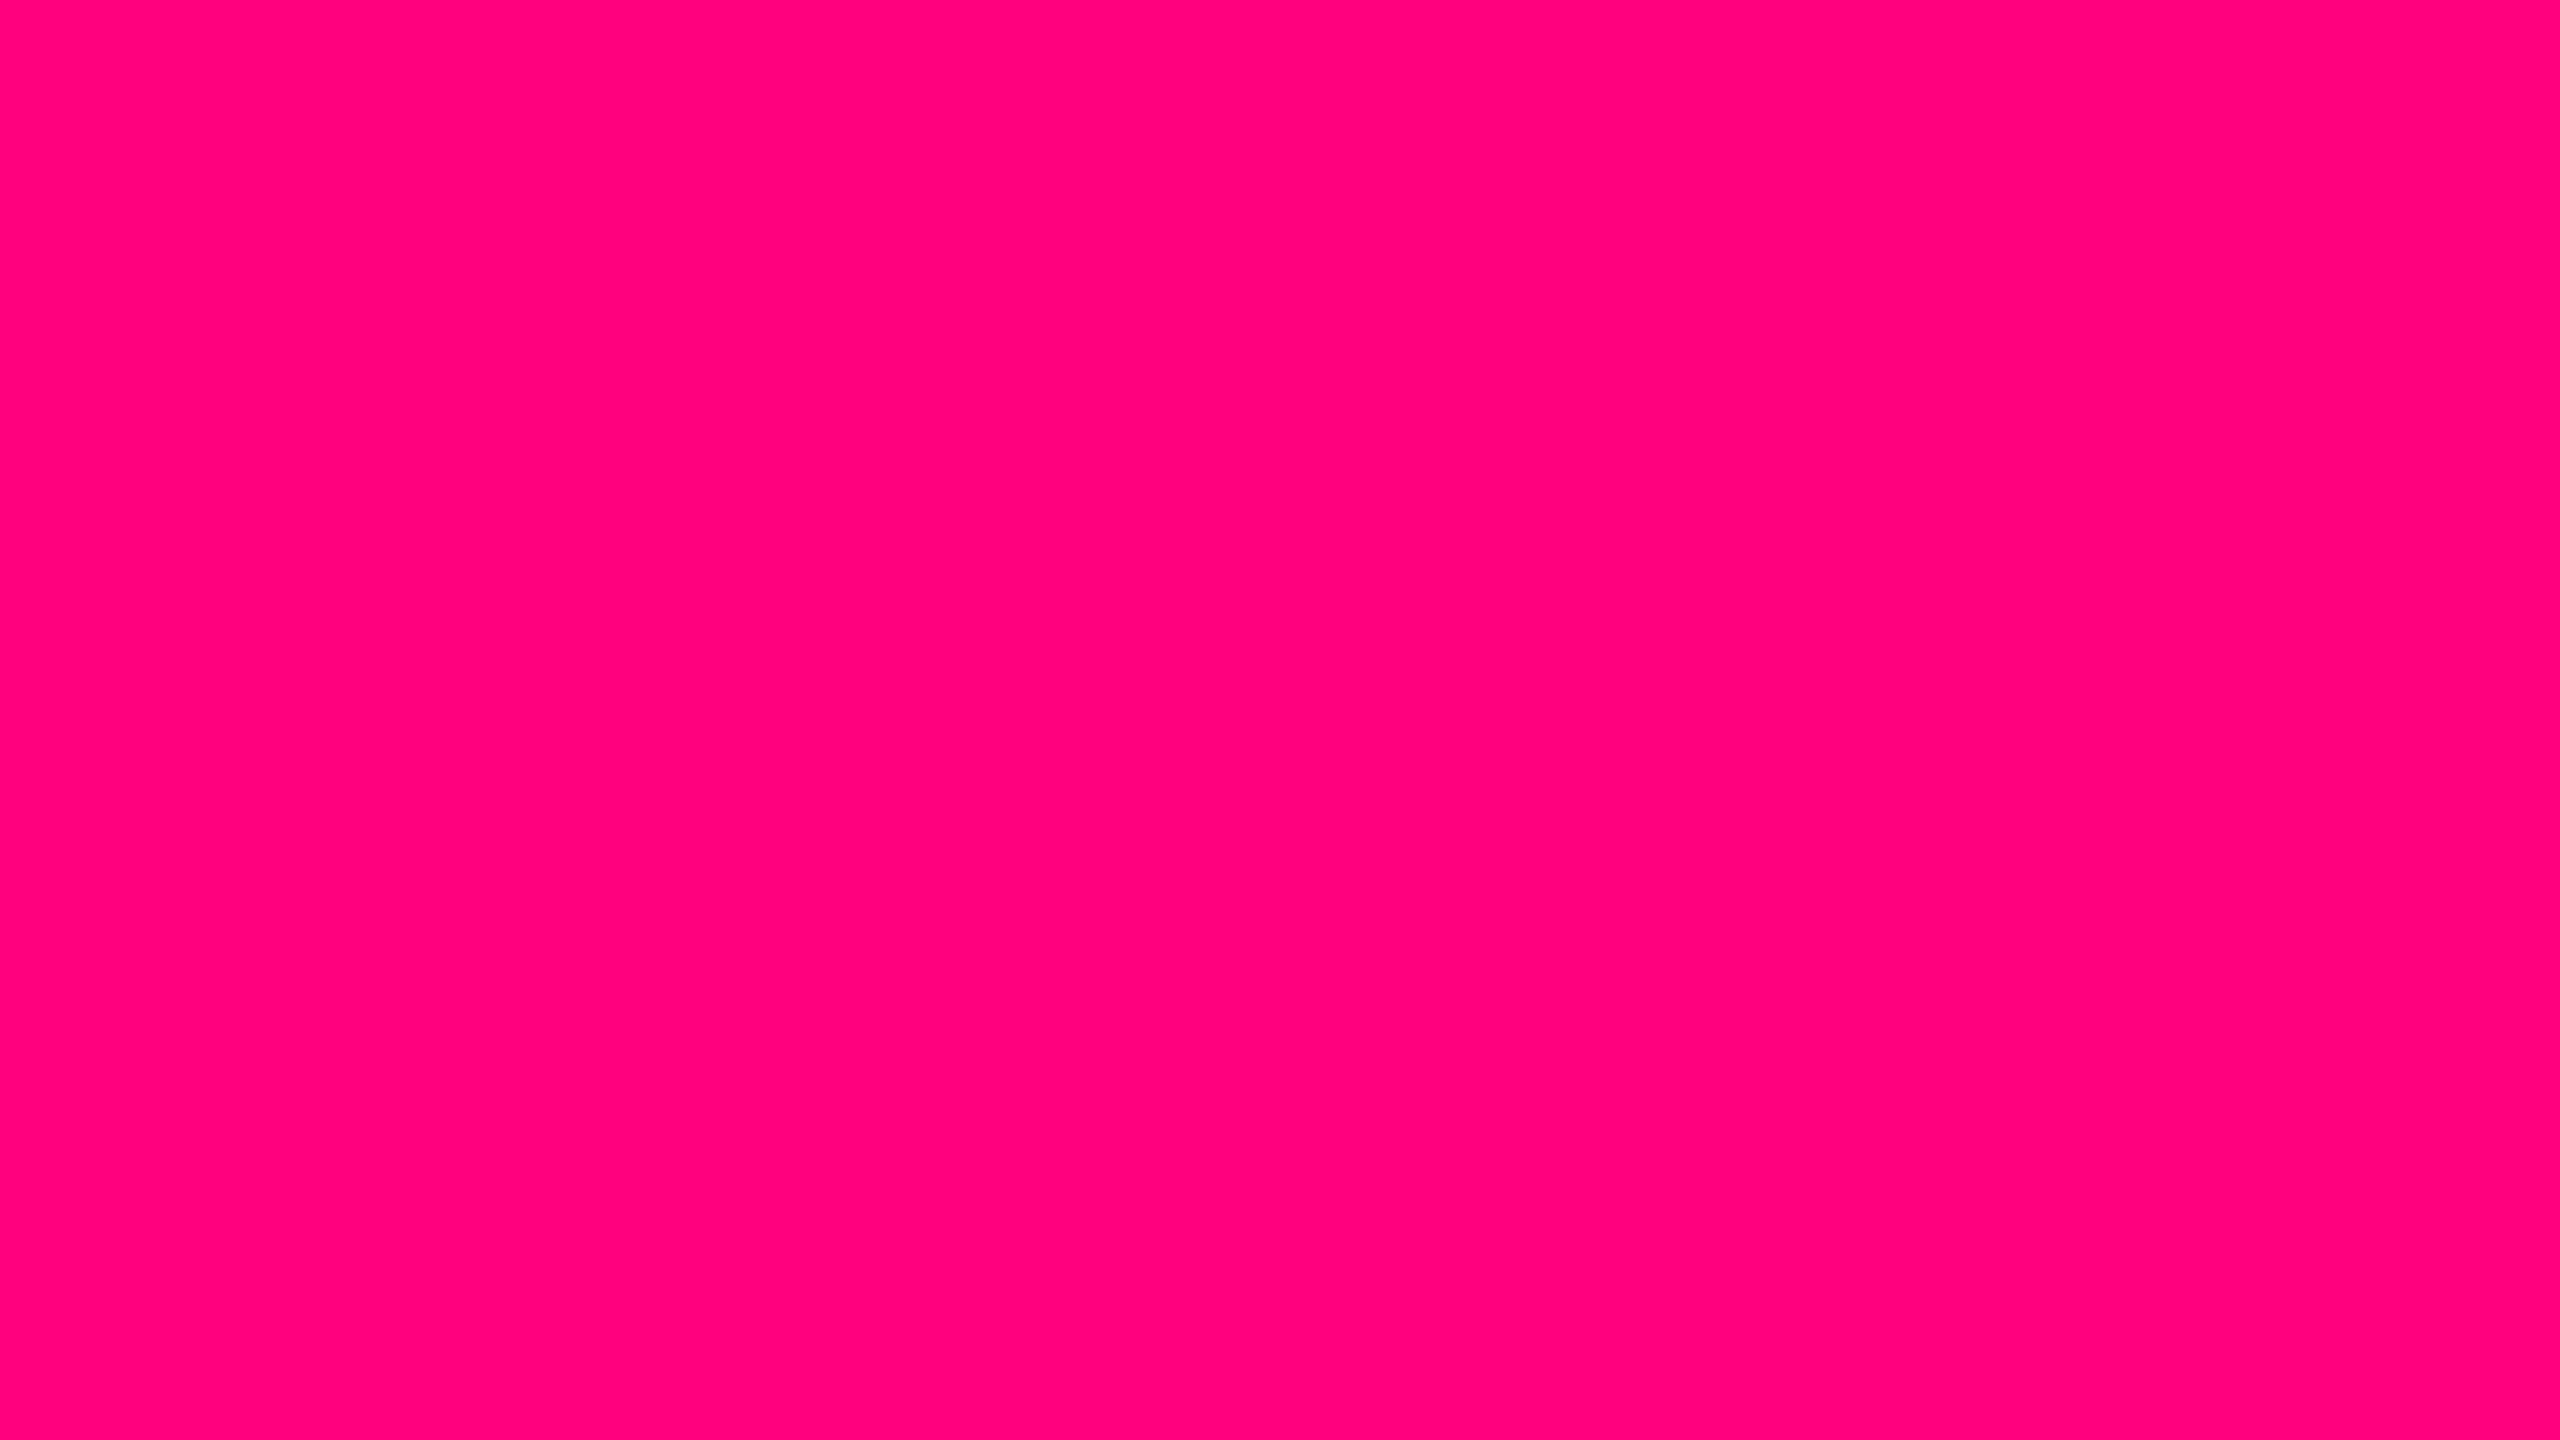 Tổng hợp 777 Pink background neon với hiệu ứng sáng tạo